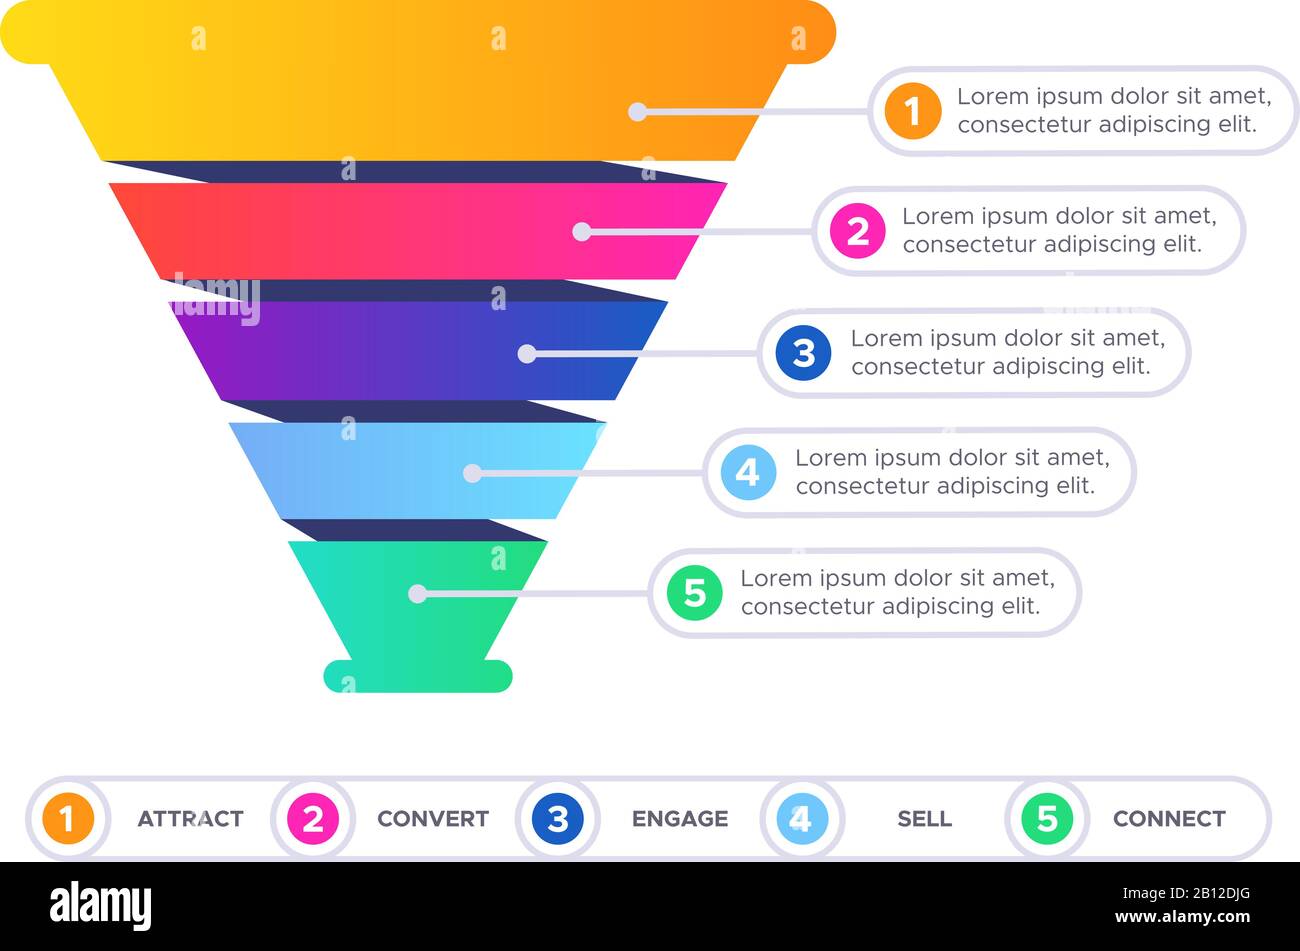 Infografik zu Trichterverkäufen. Marketing Conversion Cone Chart, Business Sale Filter und Pyramid Graphic Flat Vector Illustration Stock Vektor